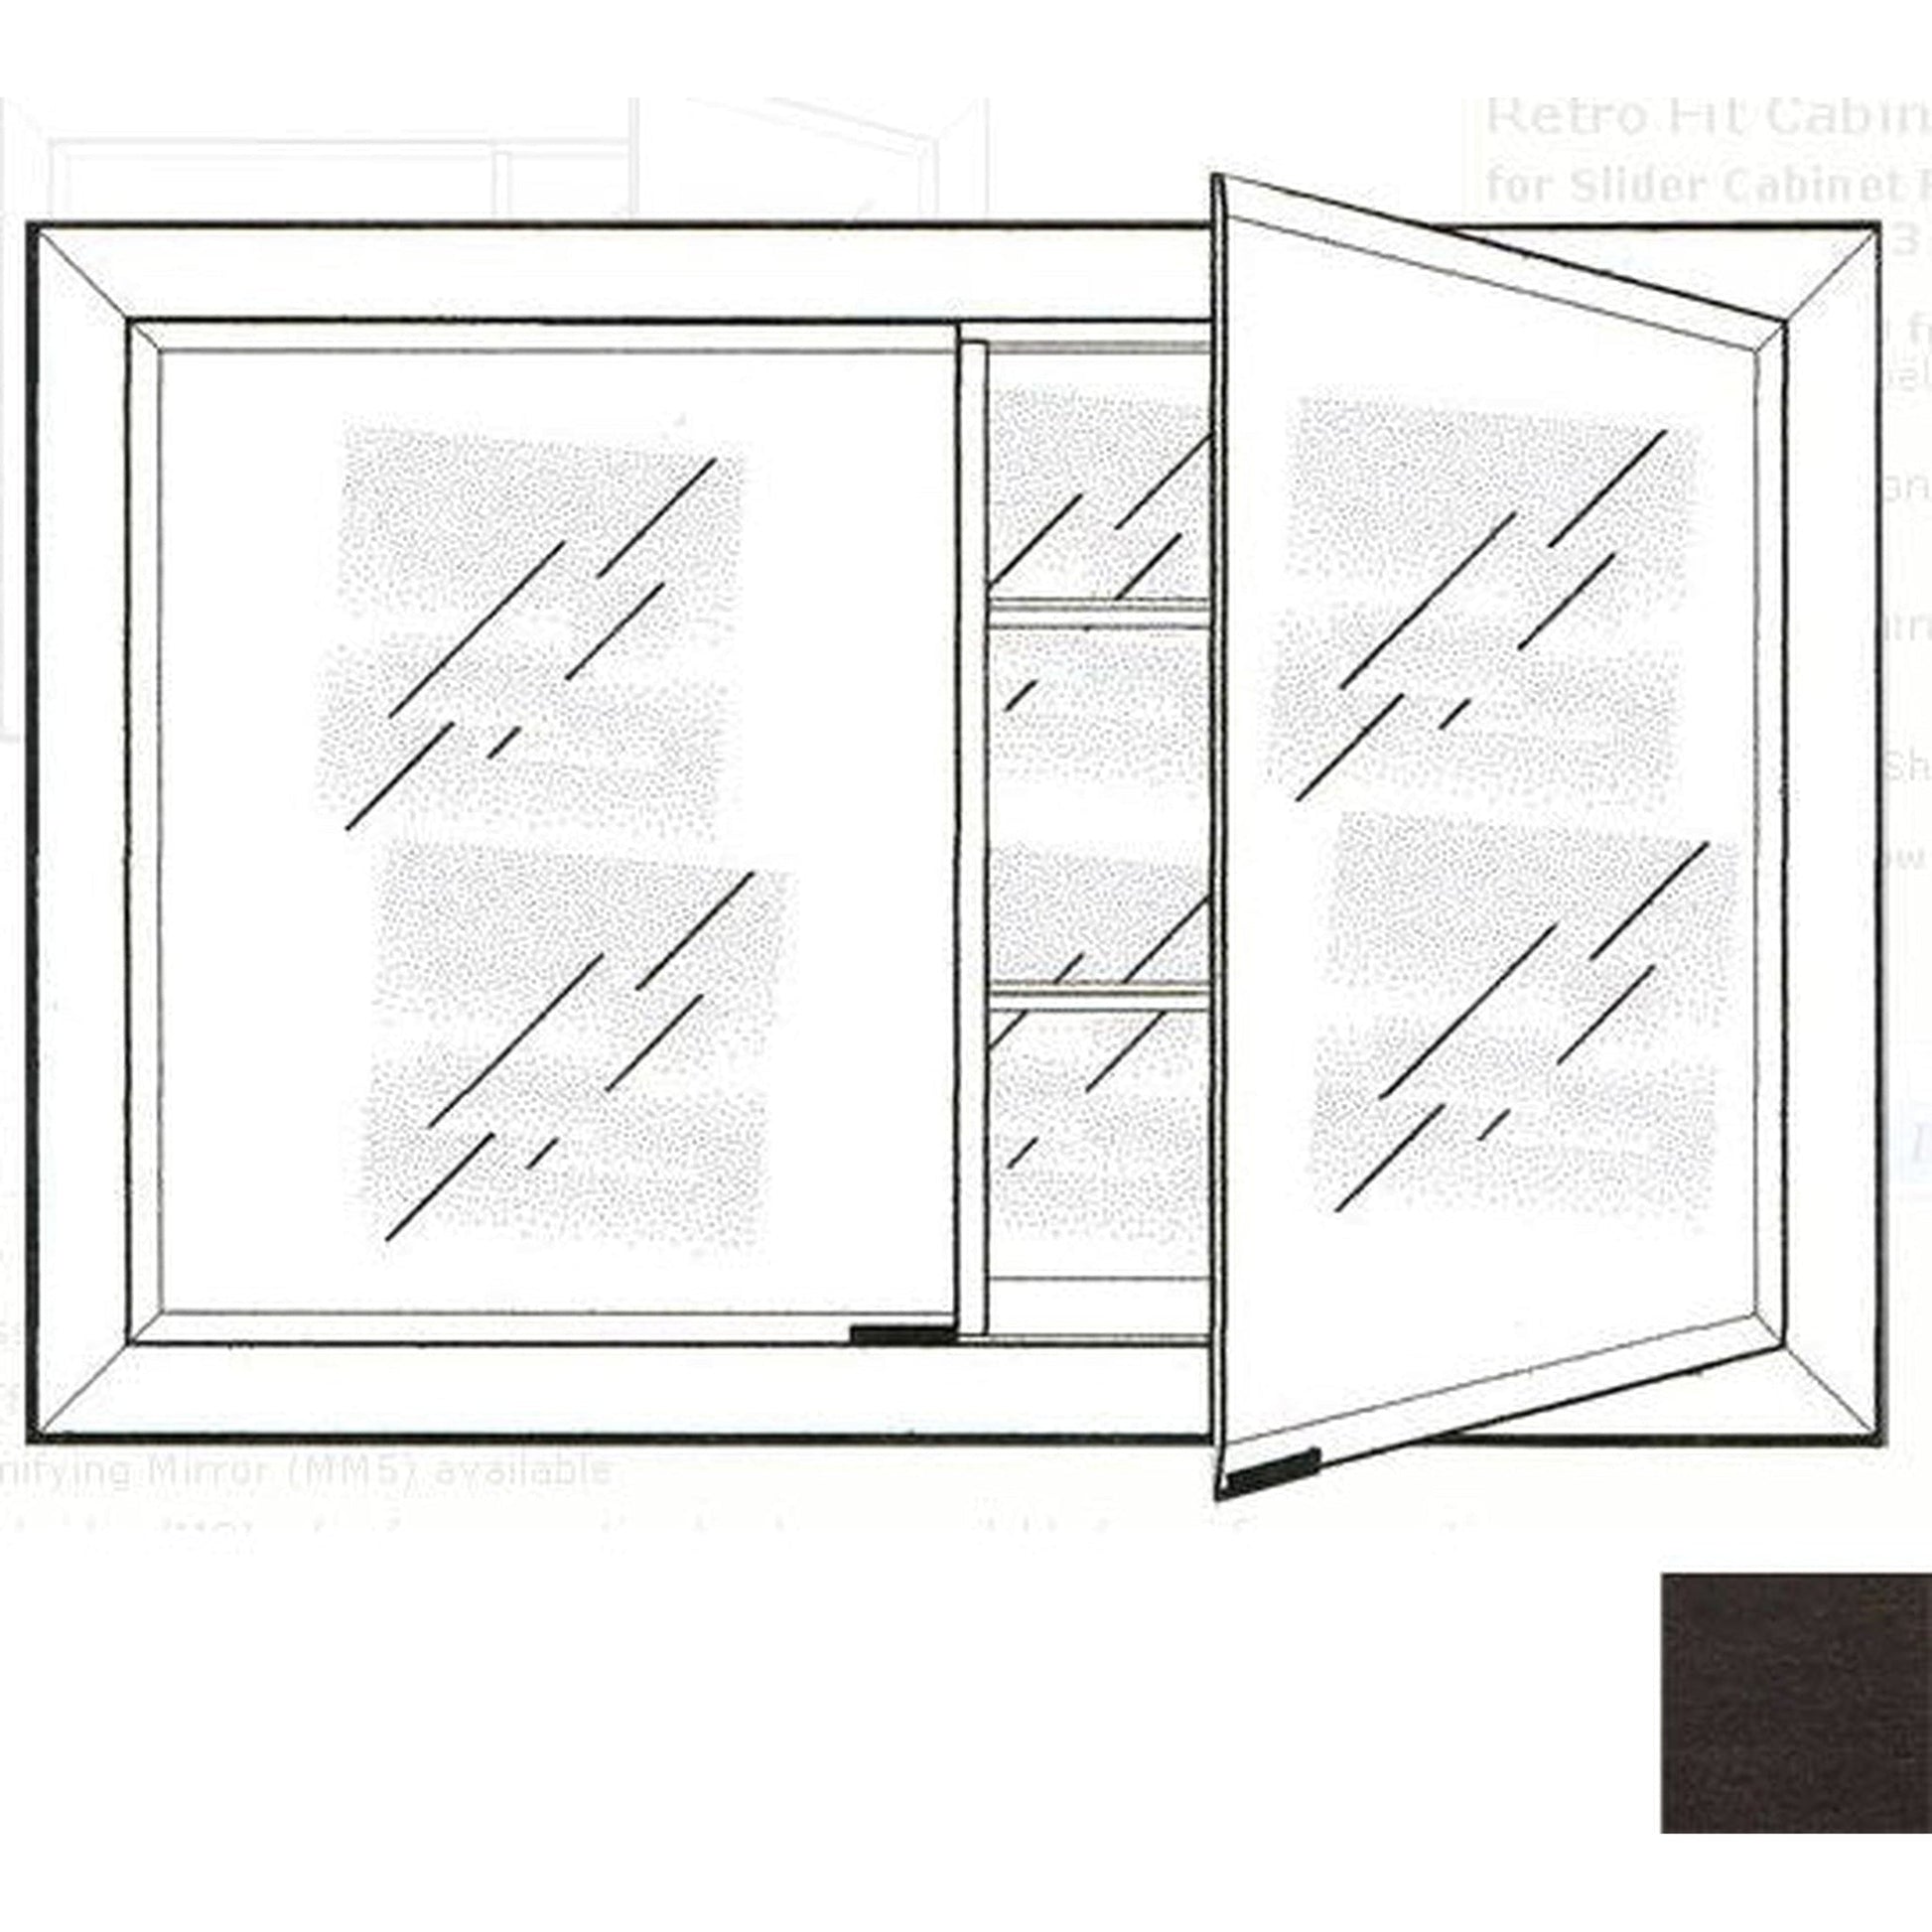 Afina Signature 27" x 21" Tribeca Espresso Recessed Retro-Fit Double Door Medicine Cabinet With Beveled Edge Mirror